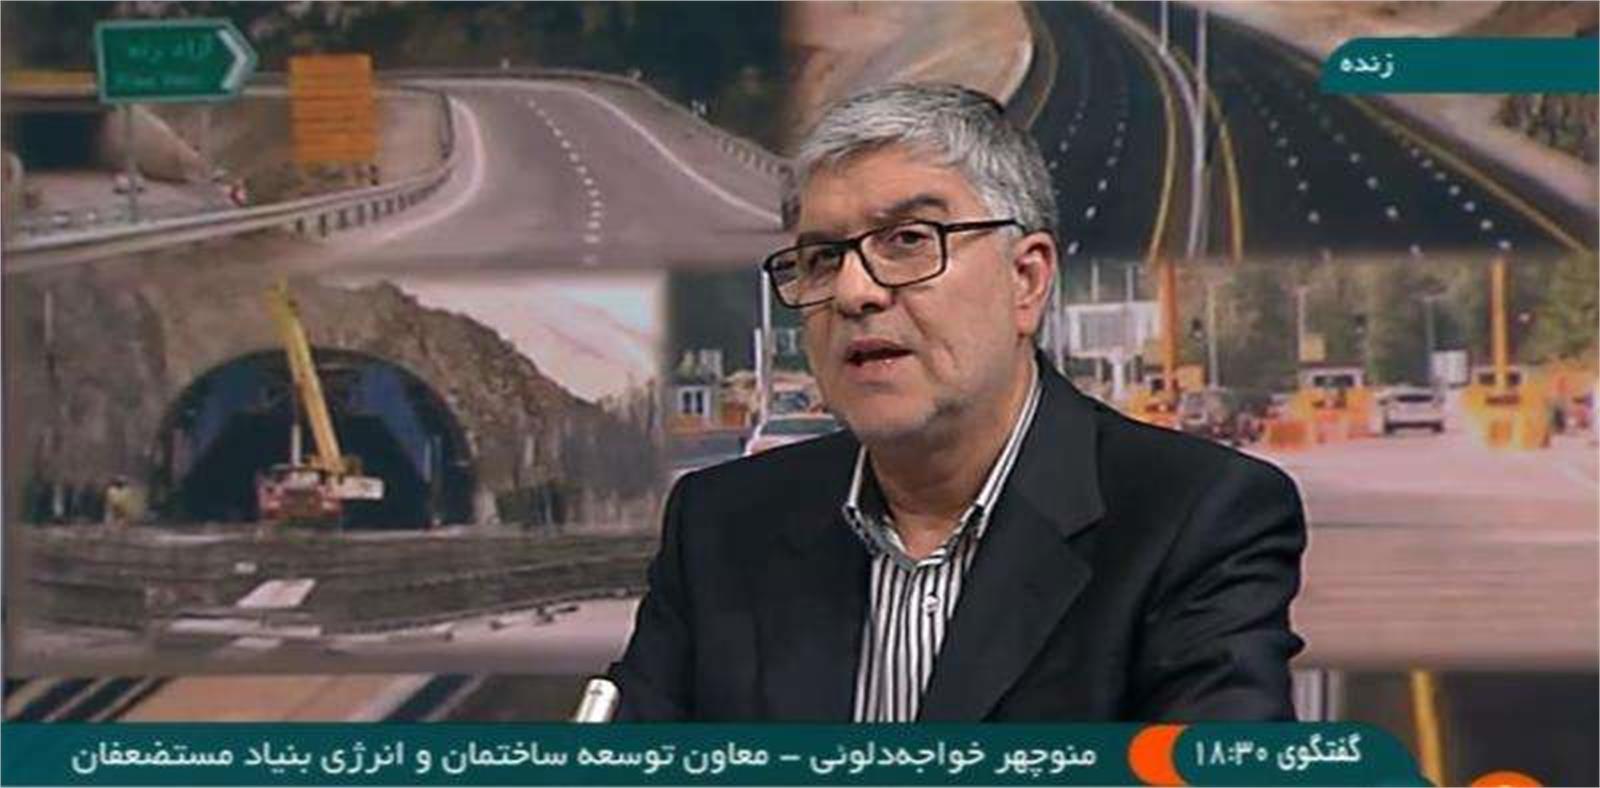 تکمیل منطقه ۲ آزادراه تهران -شمال ۲ سال پس از افتتاح منطقه یک